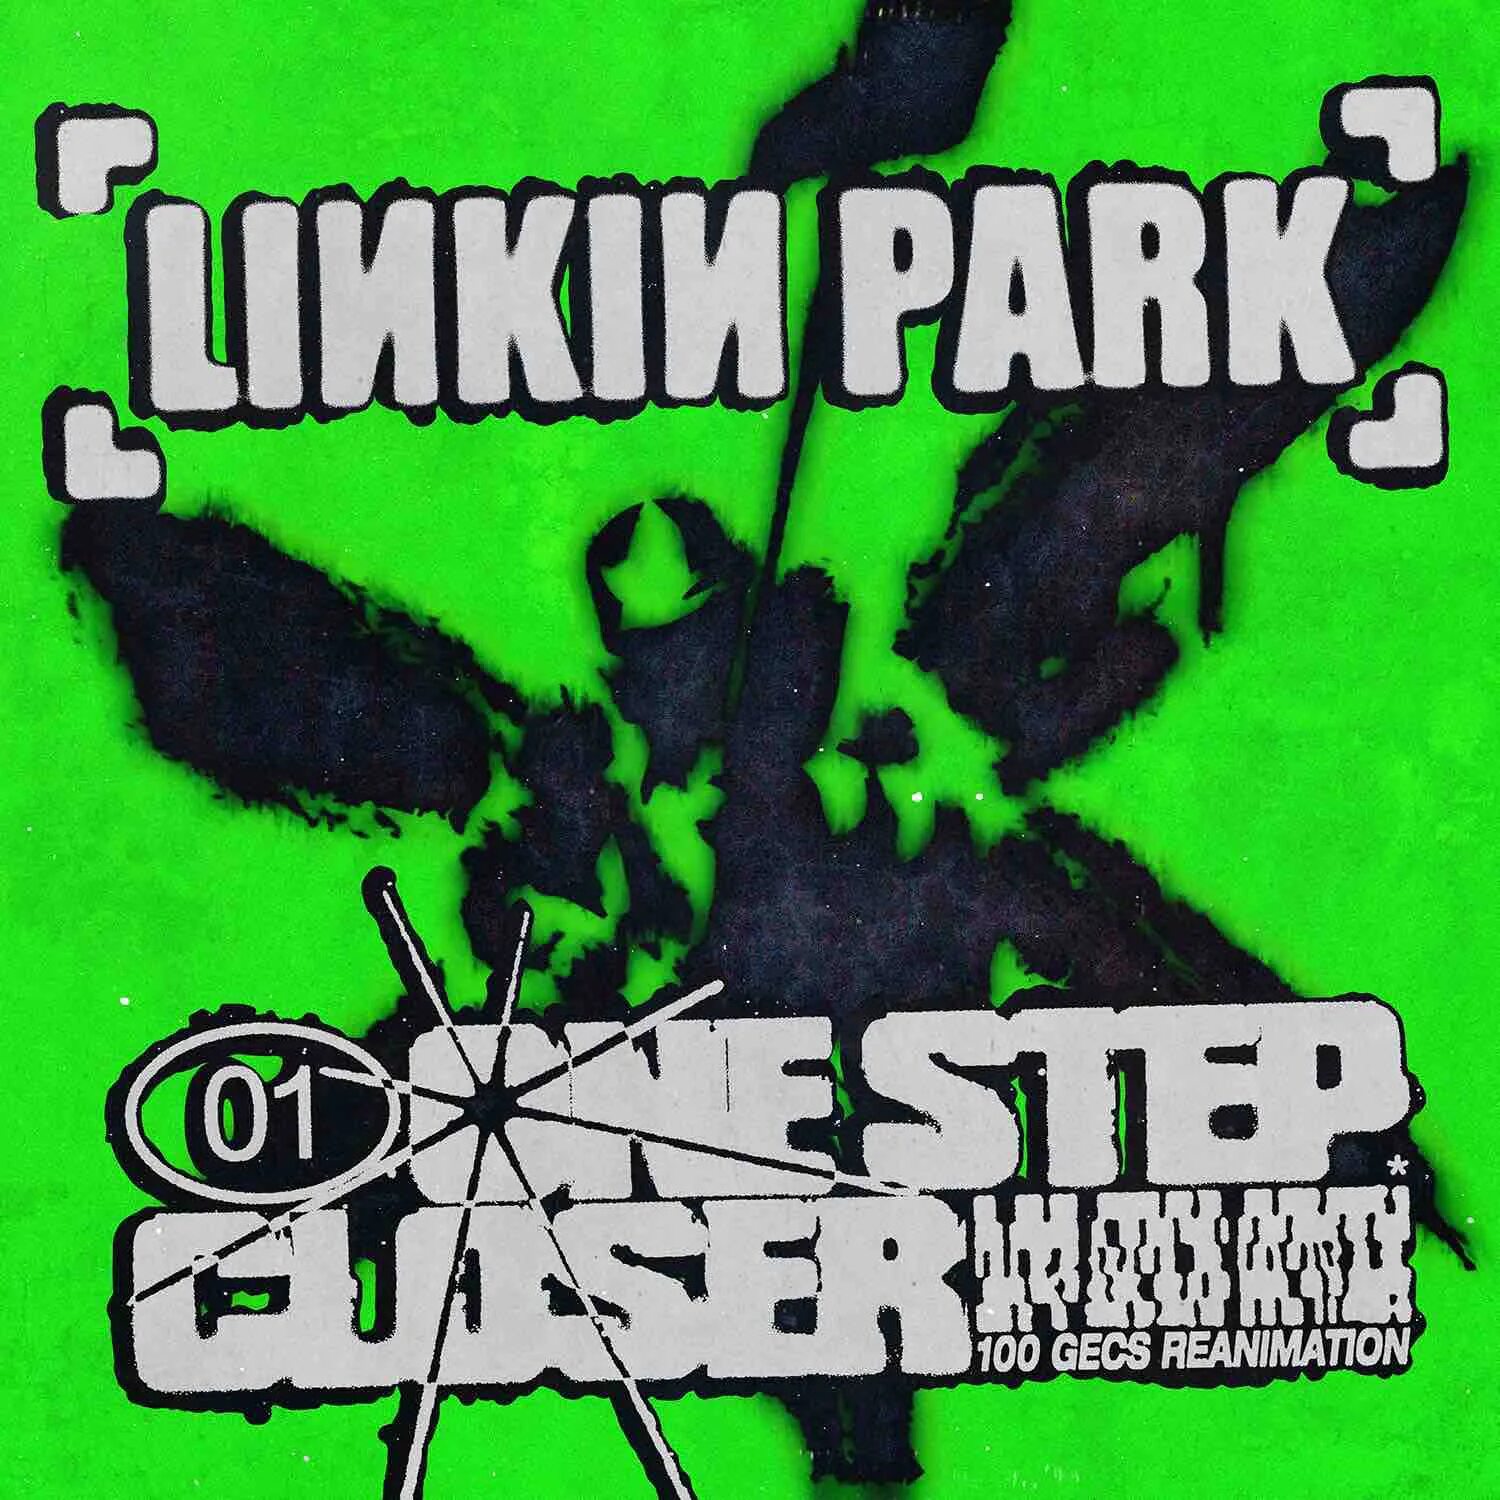 Linkin park closer. One Step closer. One Step closer 100 gecs. Linkin Park one Step closer. Linkin Park one Step closer обложка.